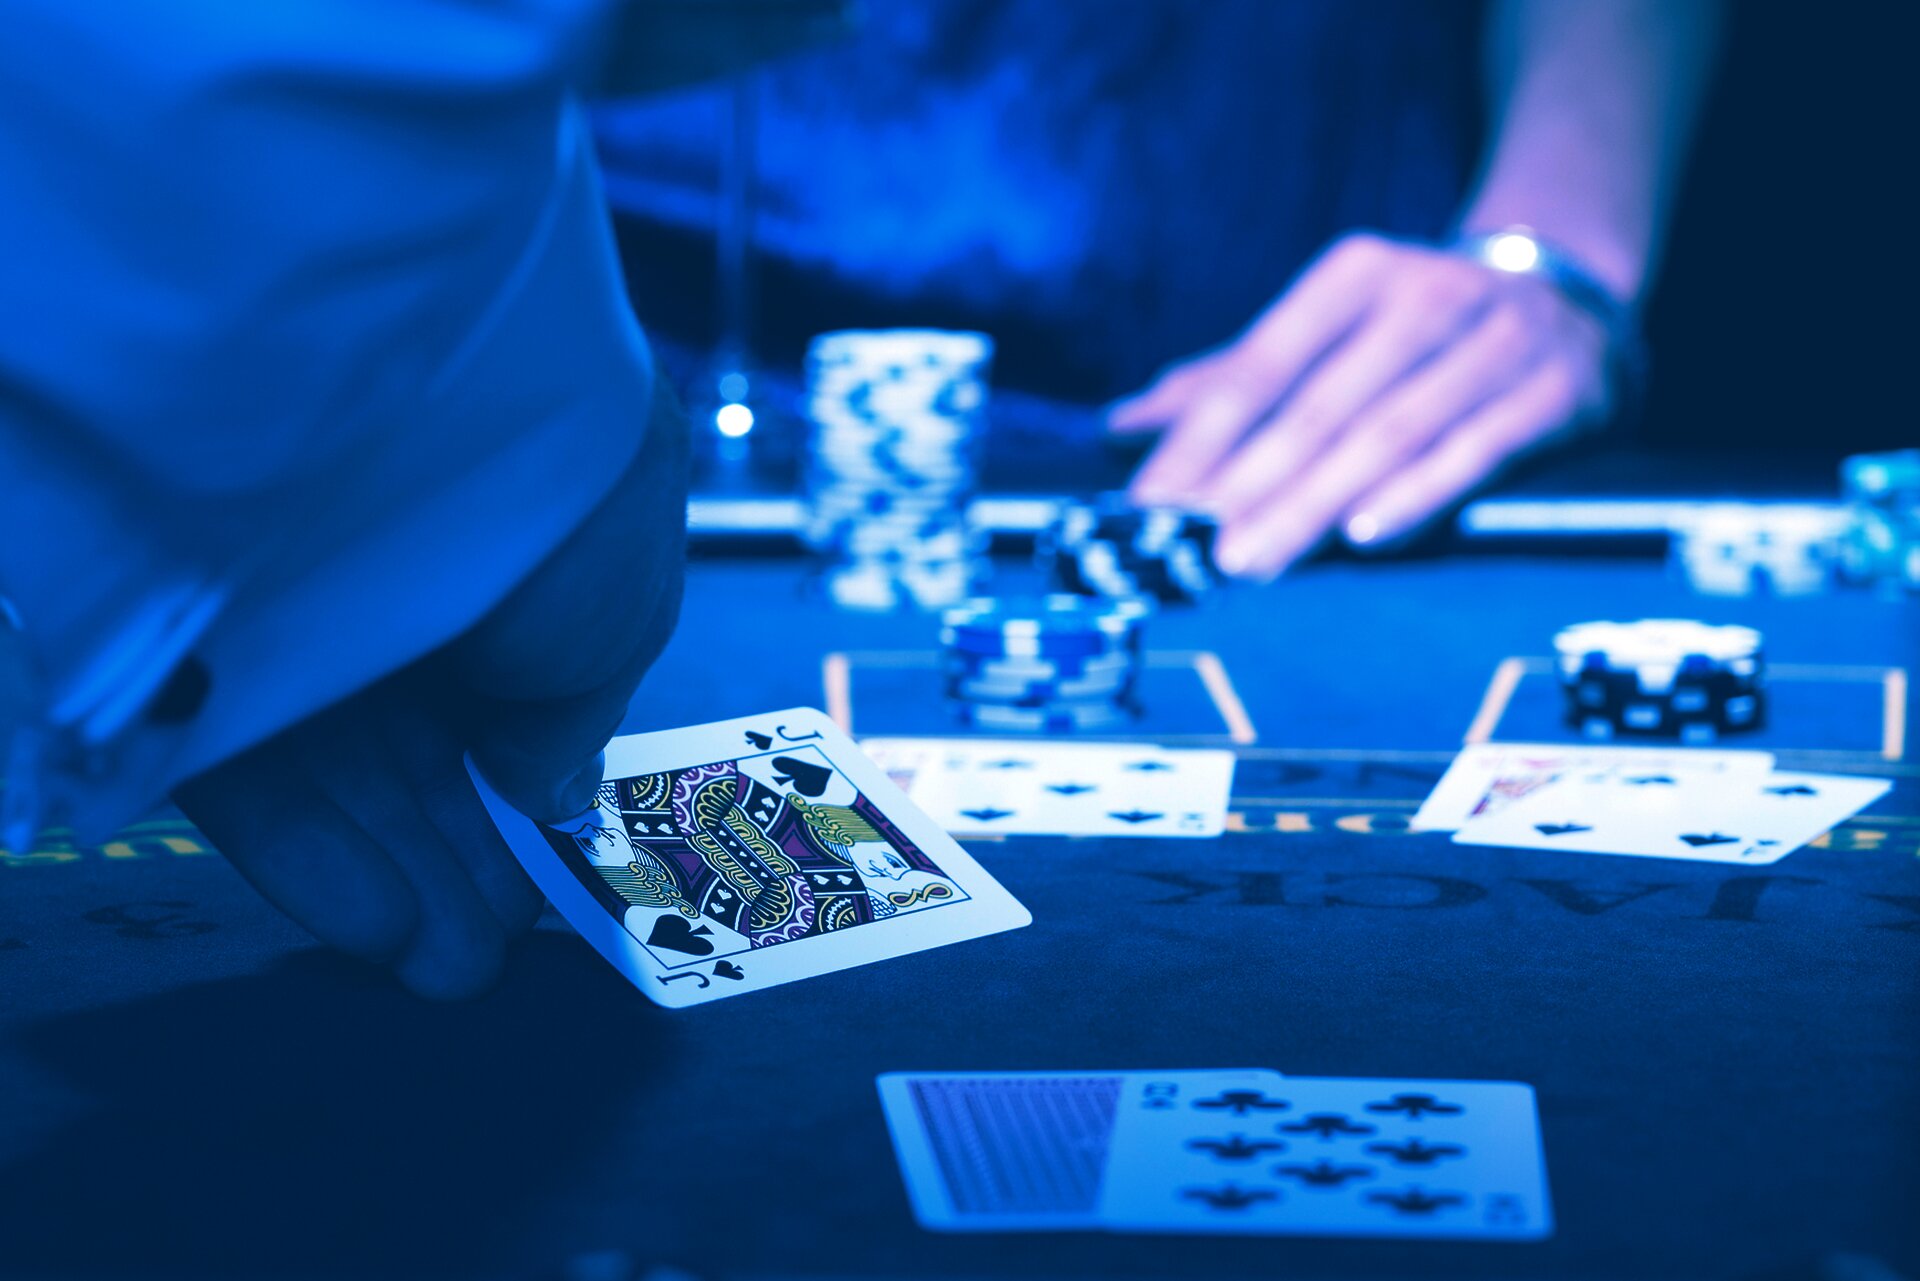 bestes Online Casino Echtgeld - Was bedeuten diese Statistiken wirklich?